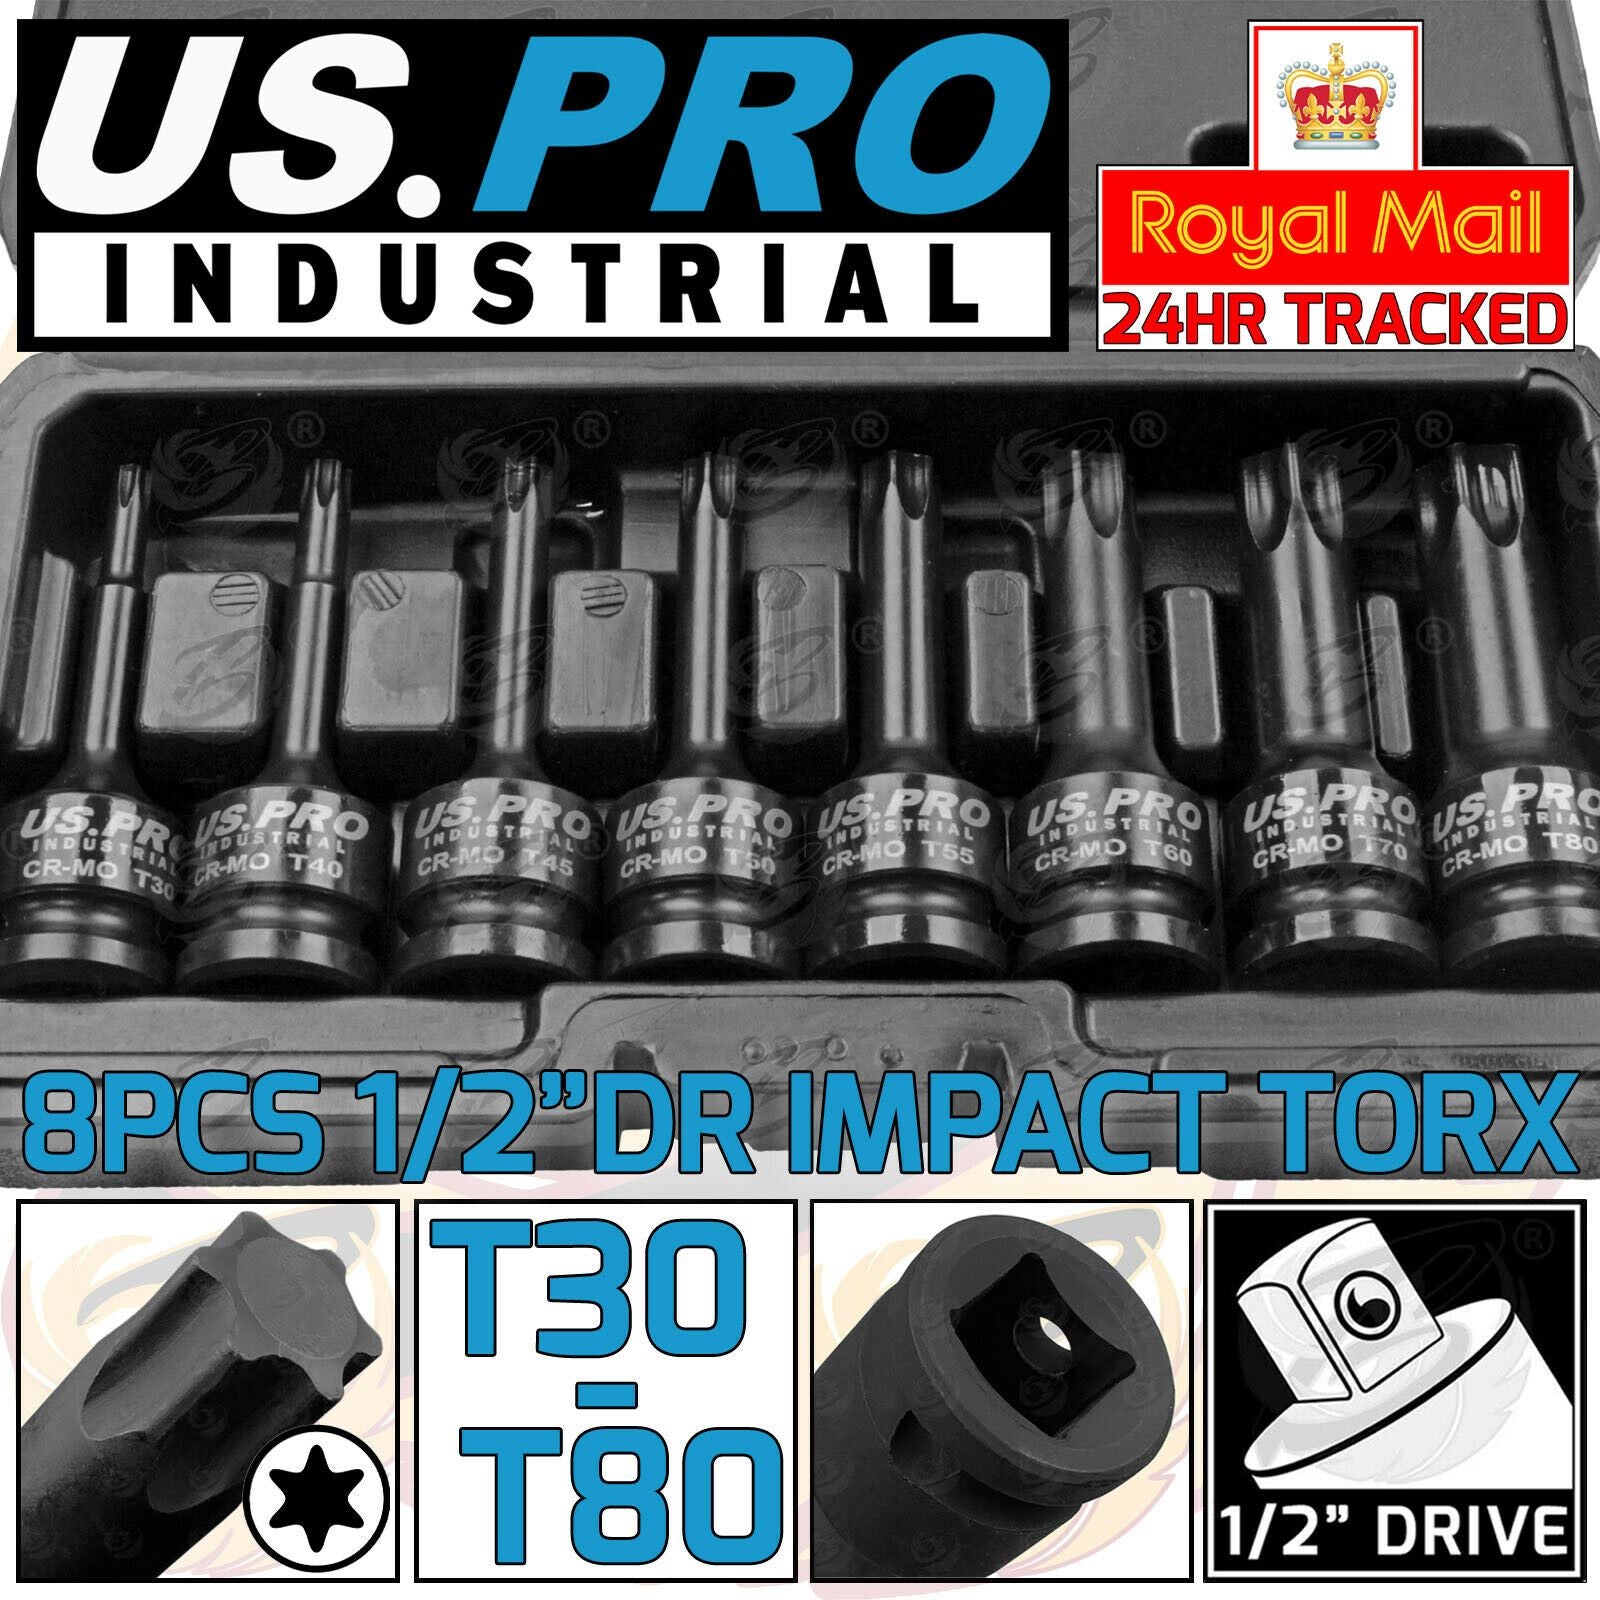 US PRO INDUSTRIAL 8PCS 1/2" DRIVE IMPACT TORX BIT SOCKETS T30 - T80